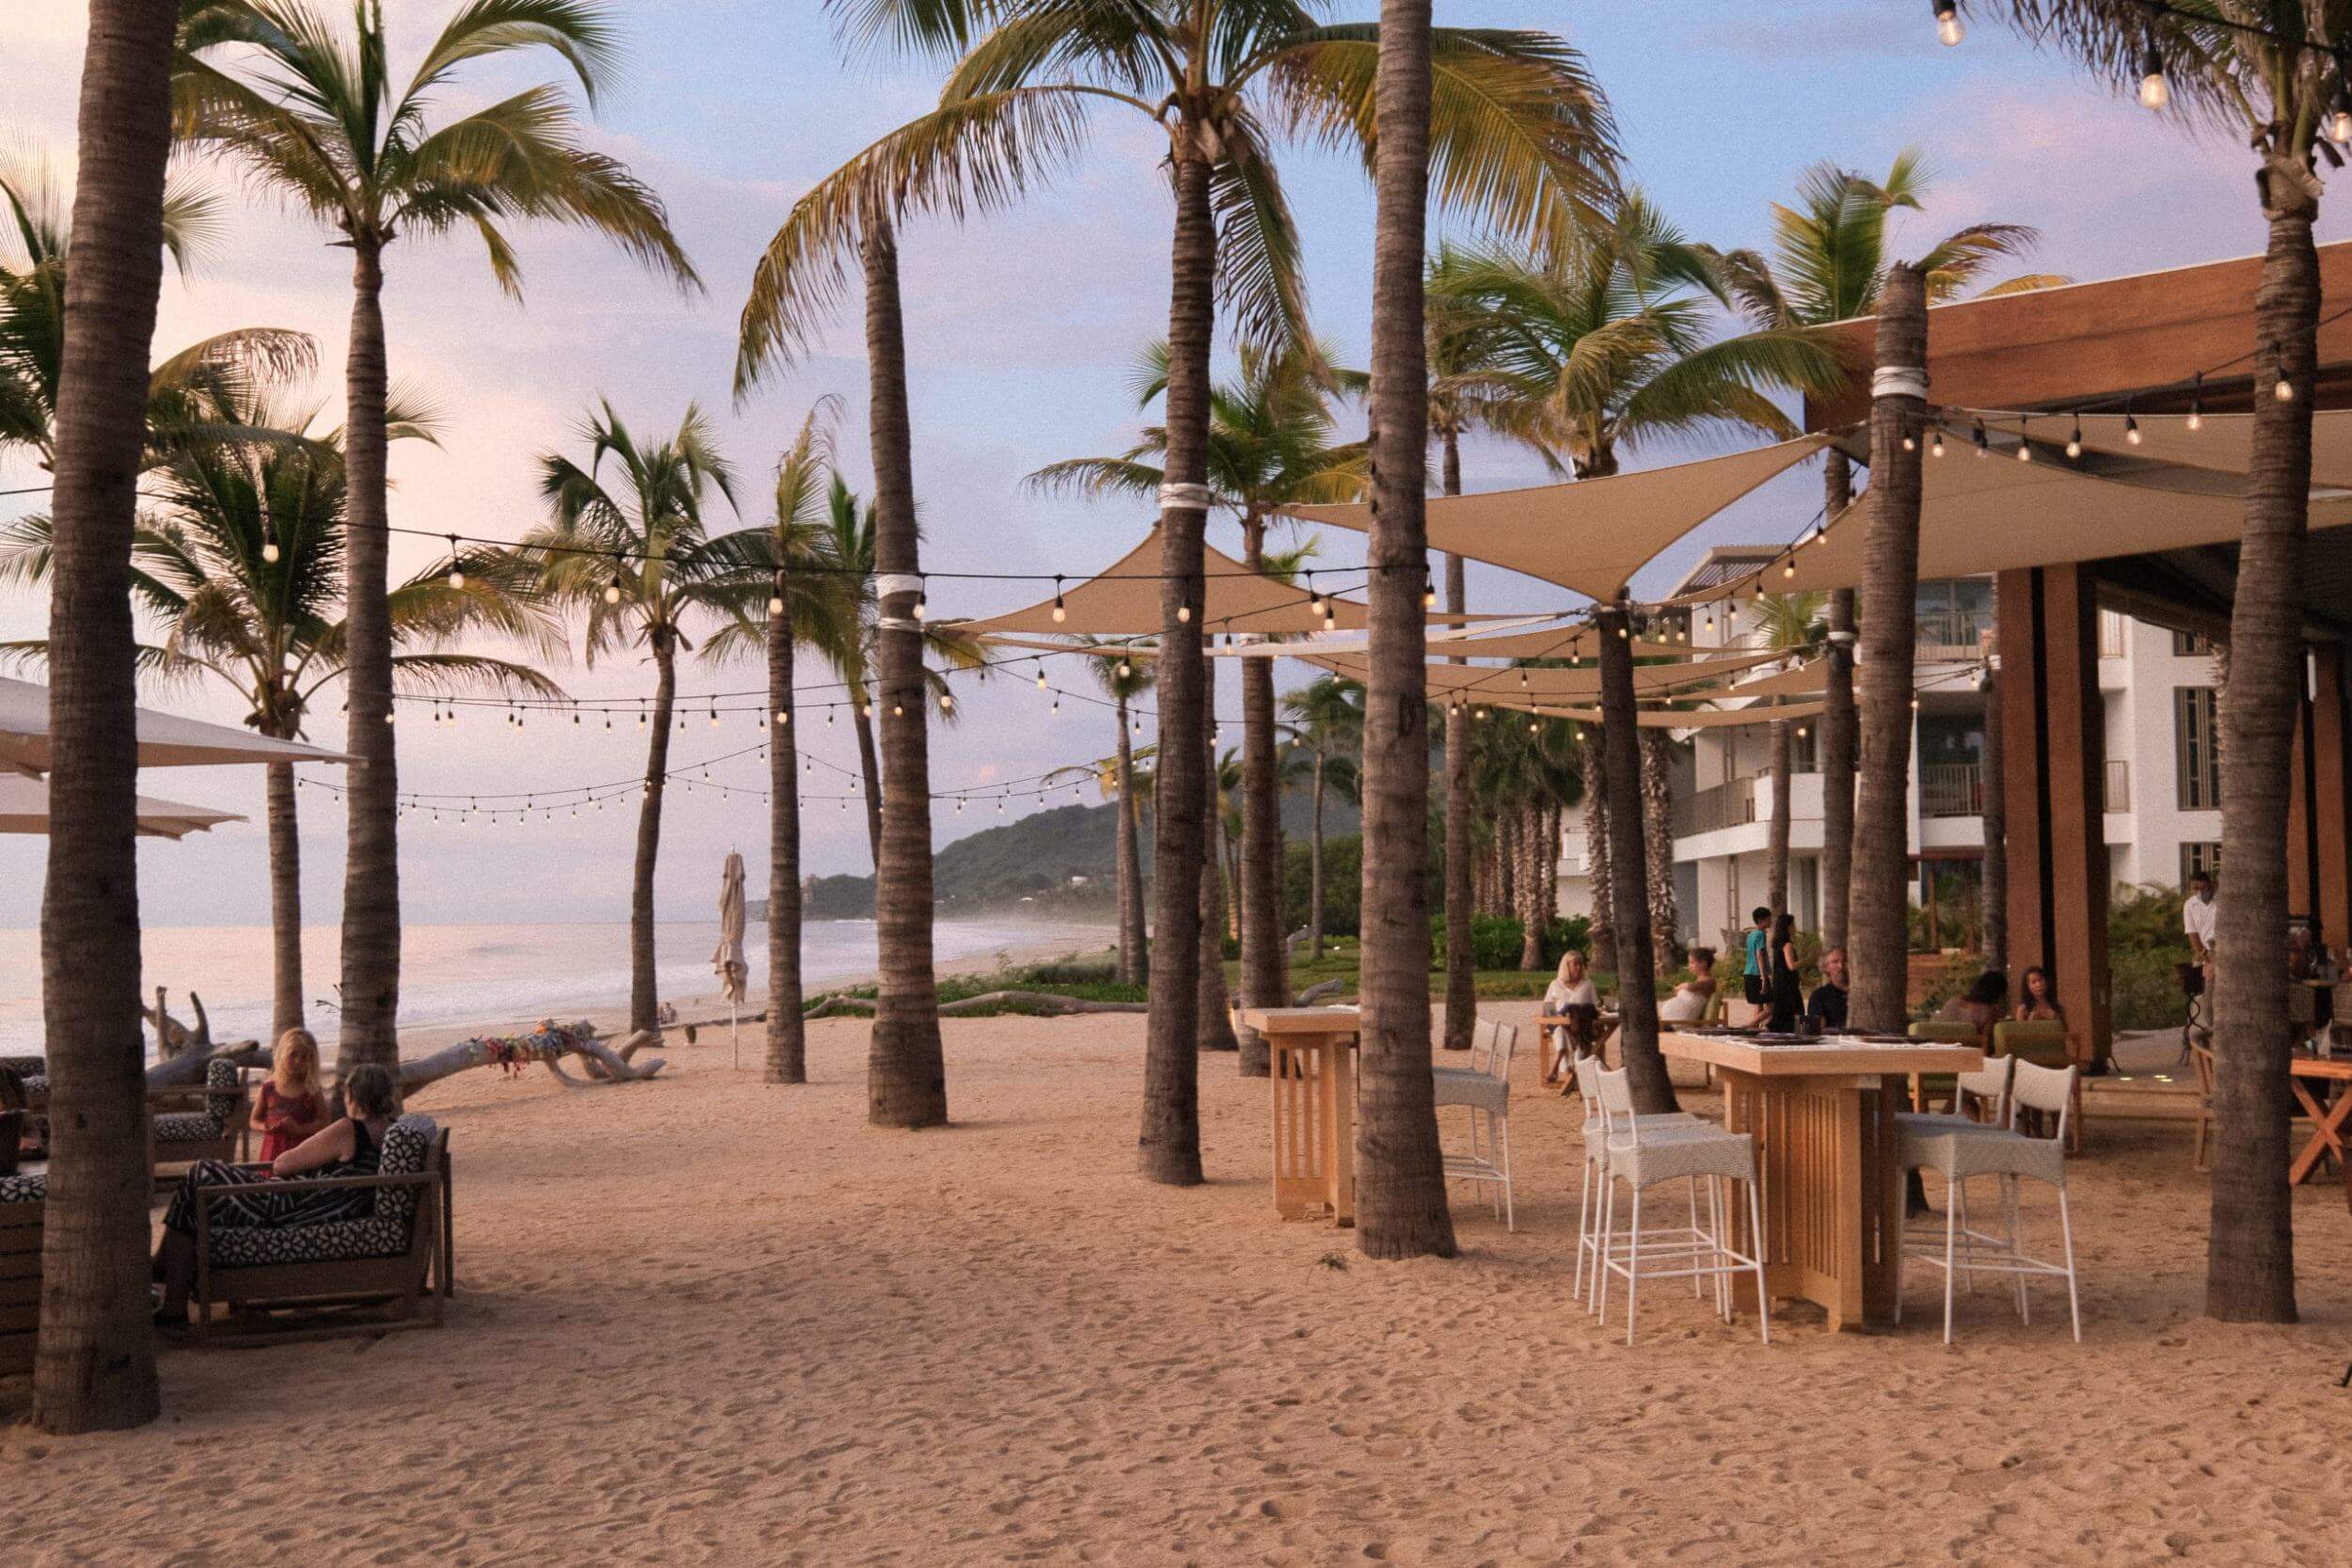 Imagen de playa con iluminación y palmeras.